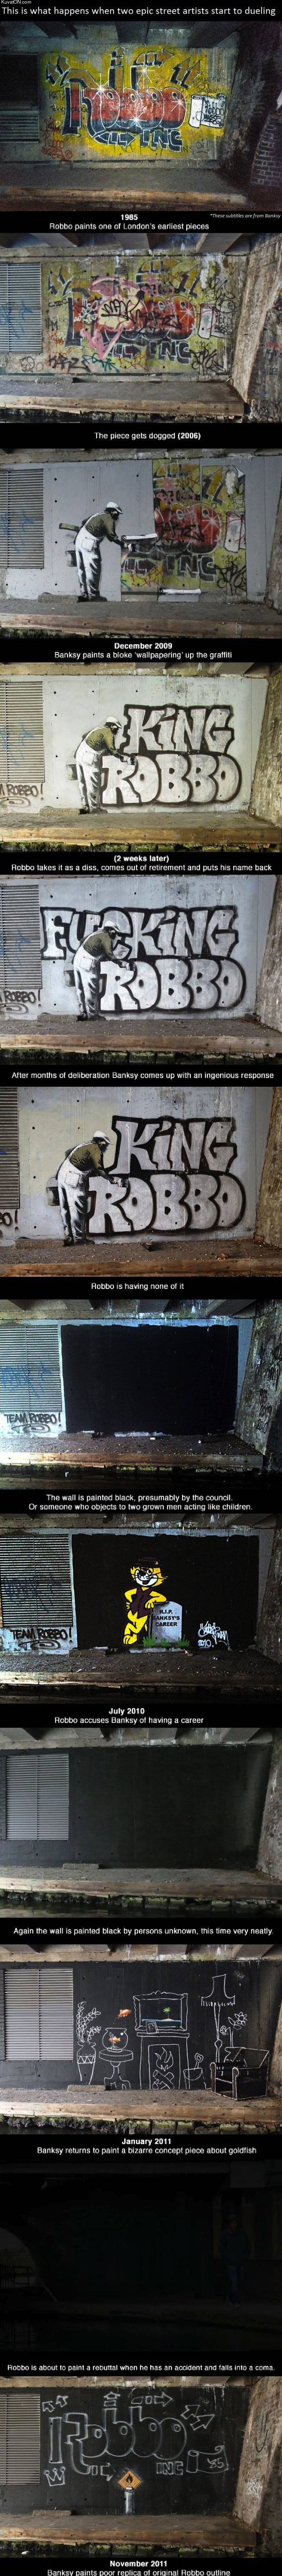 banksy_vs_robbo.jpg